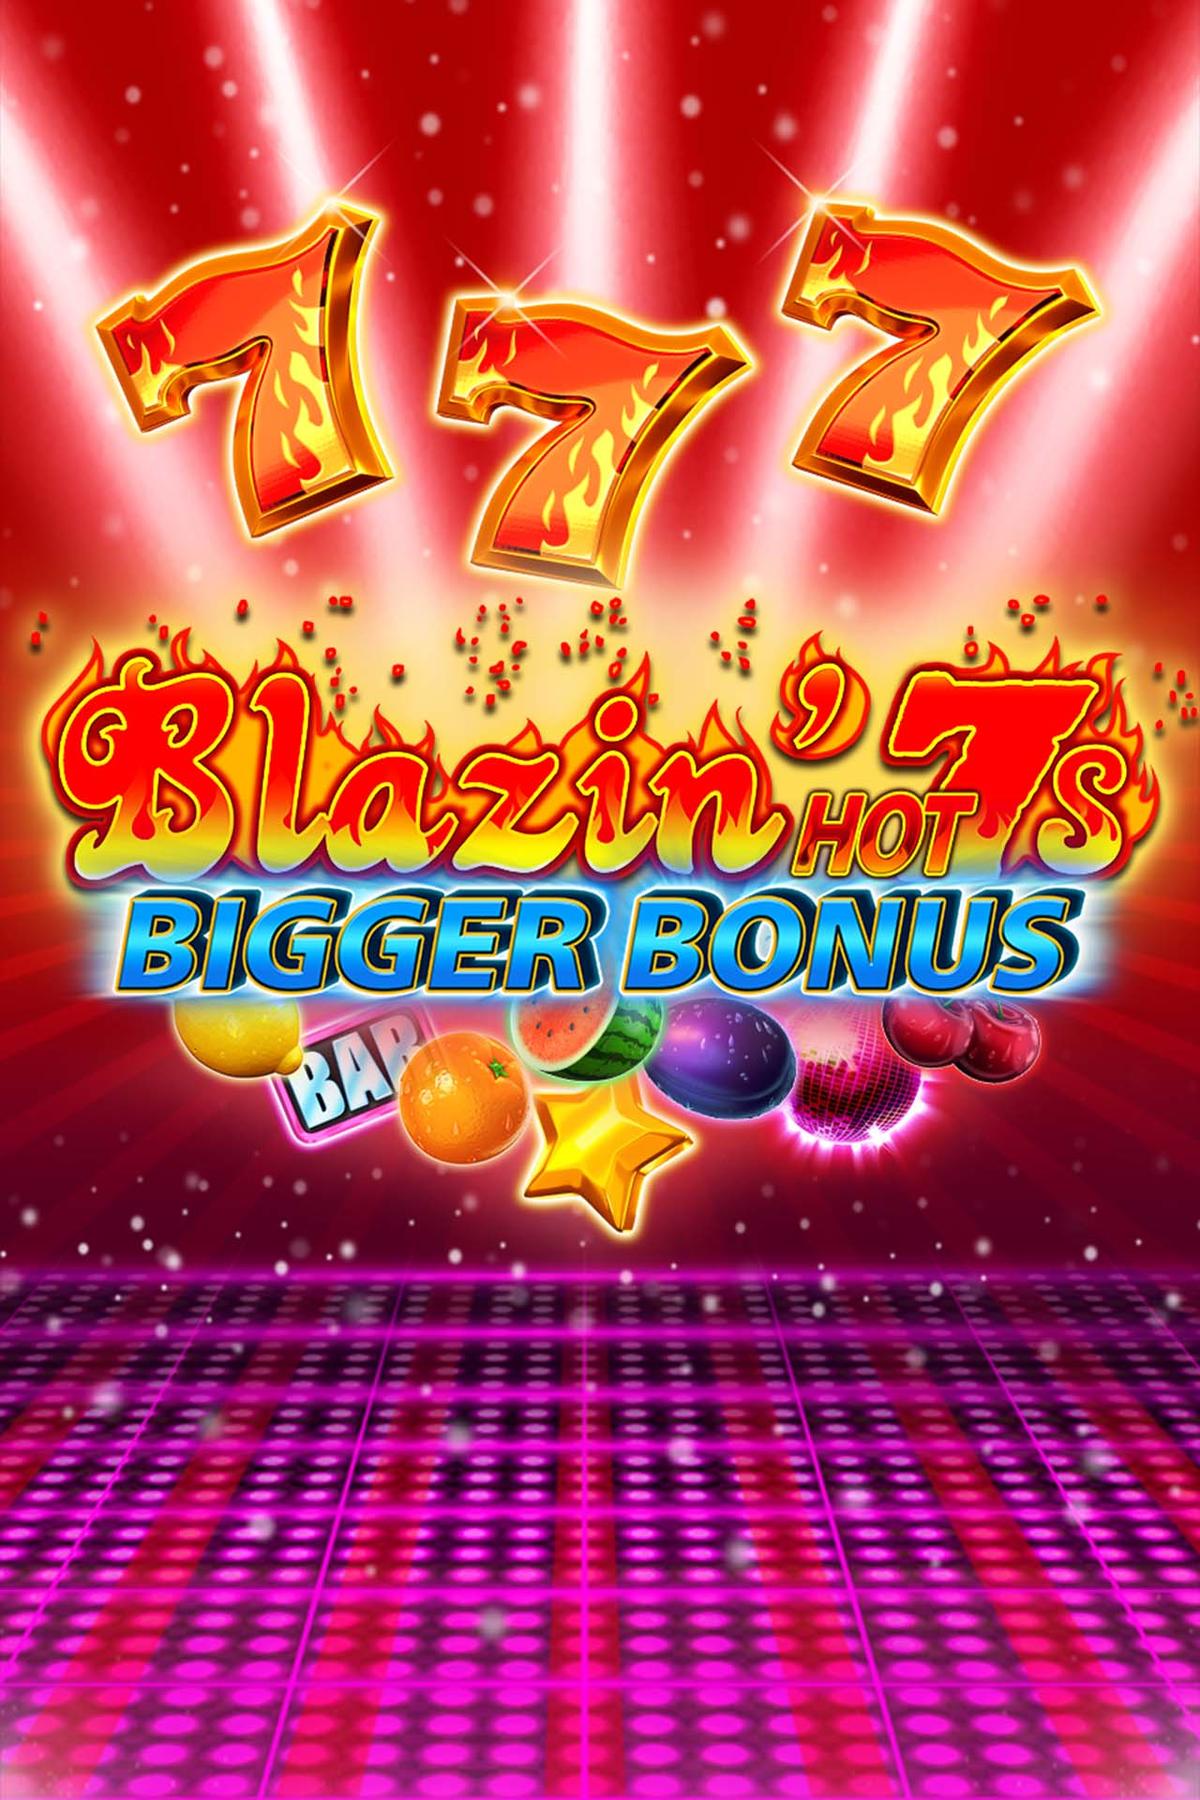 Blazin Hot 7s Bigger Bonus